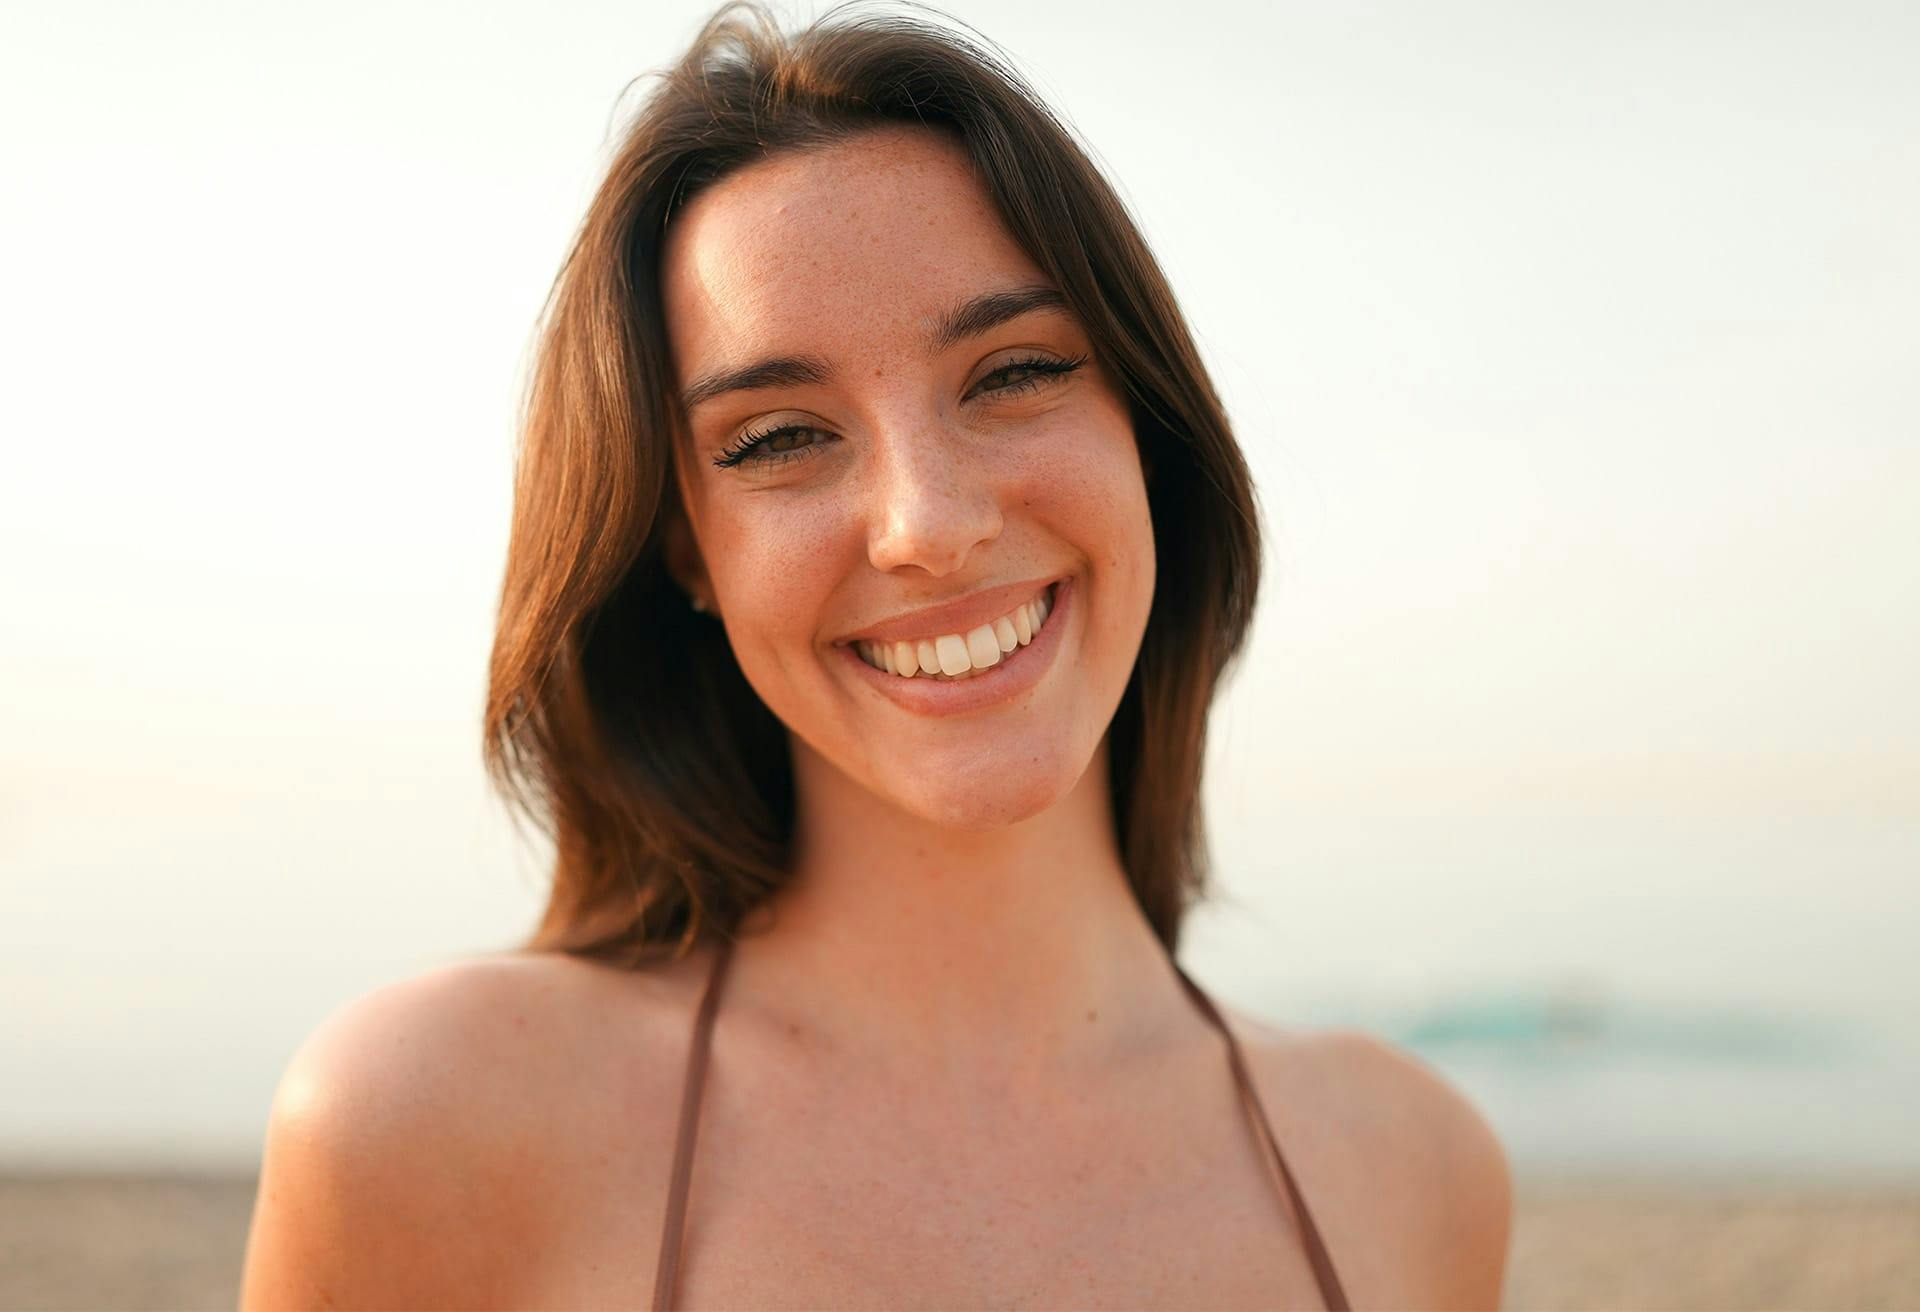 Close up of woman in bikinni top smiling